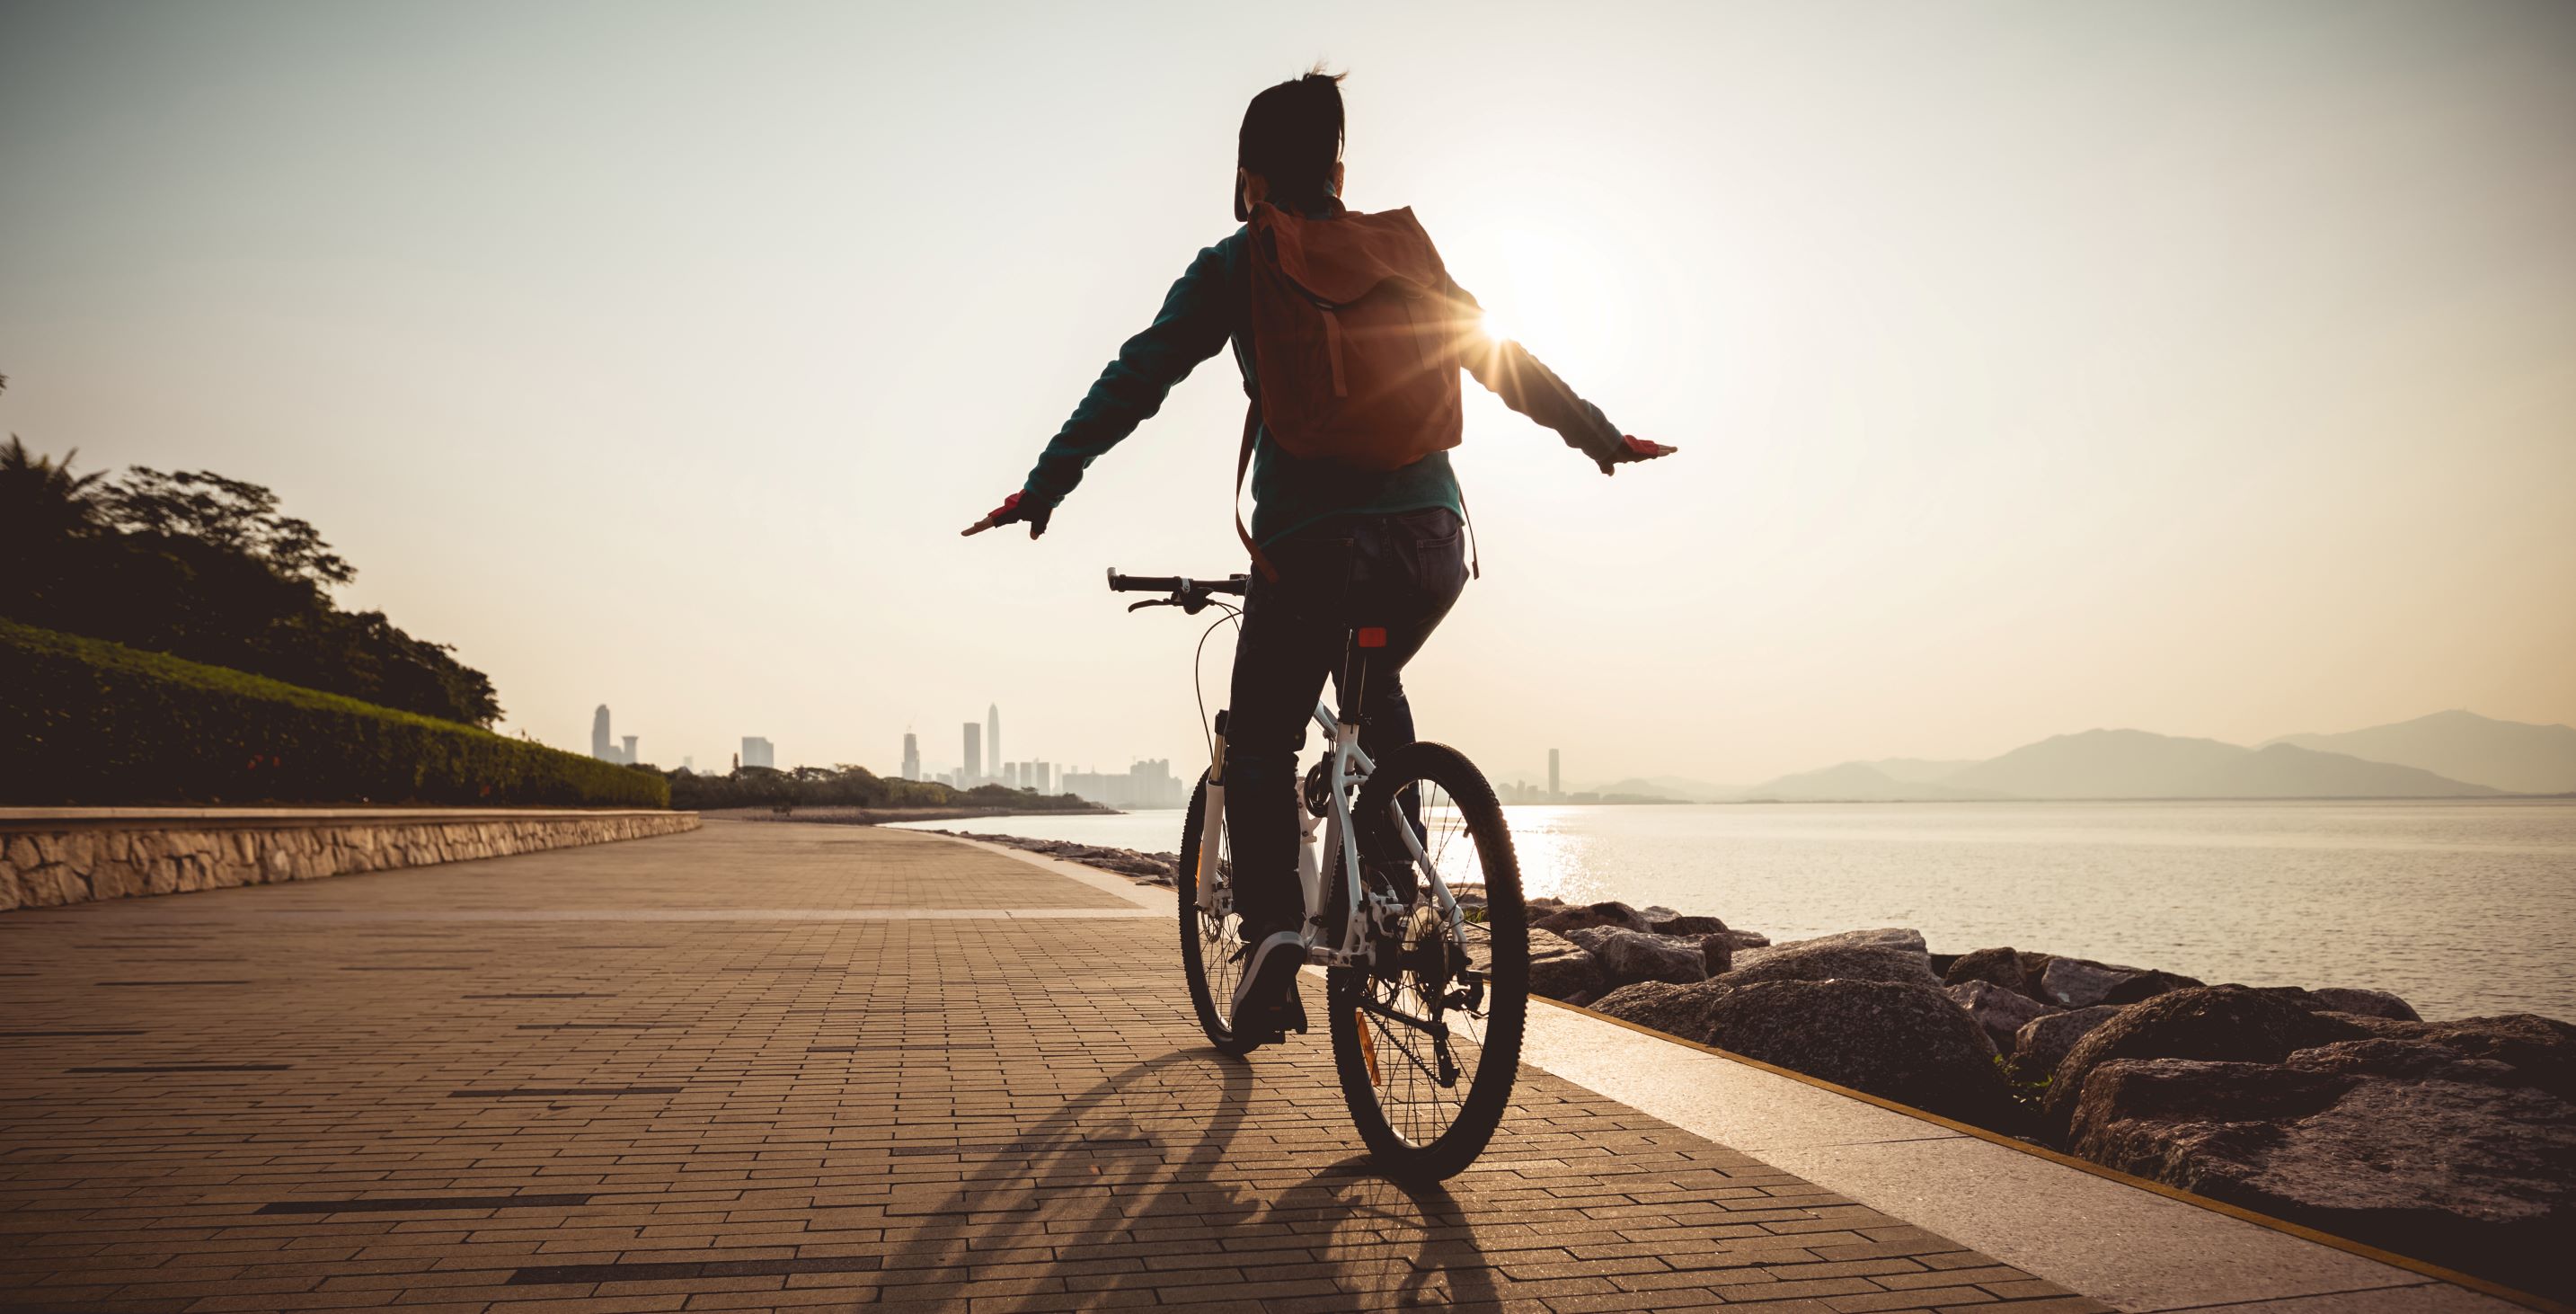 samopoczucie i spalone kalorie podczas jazdy na rowerze